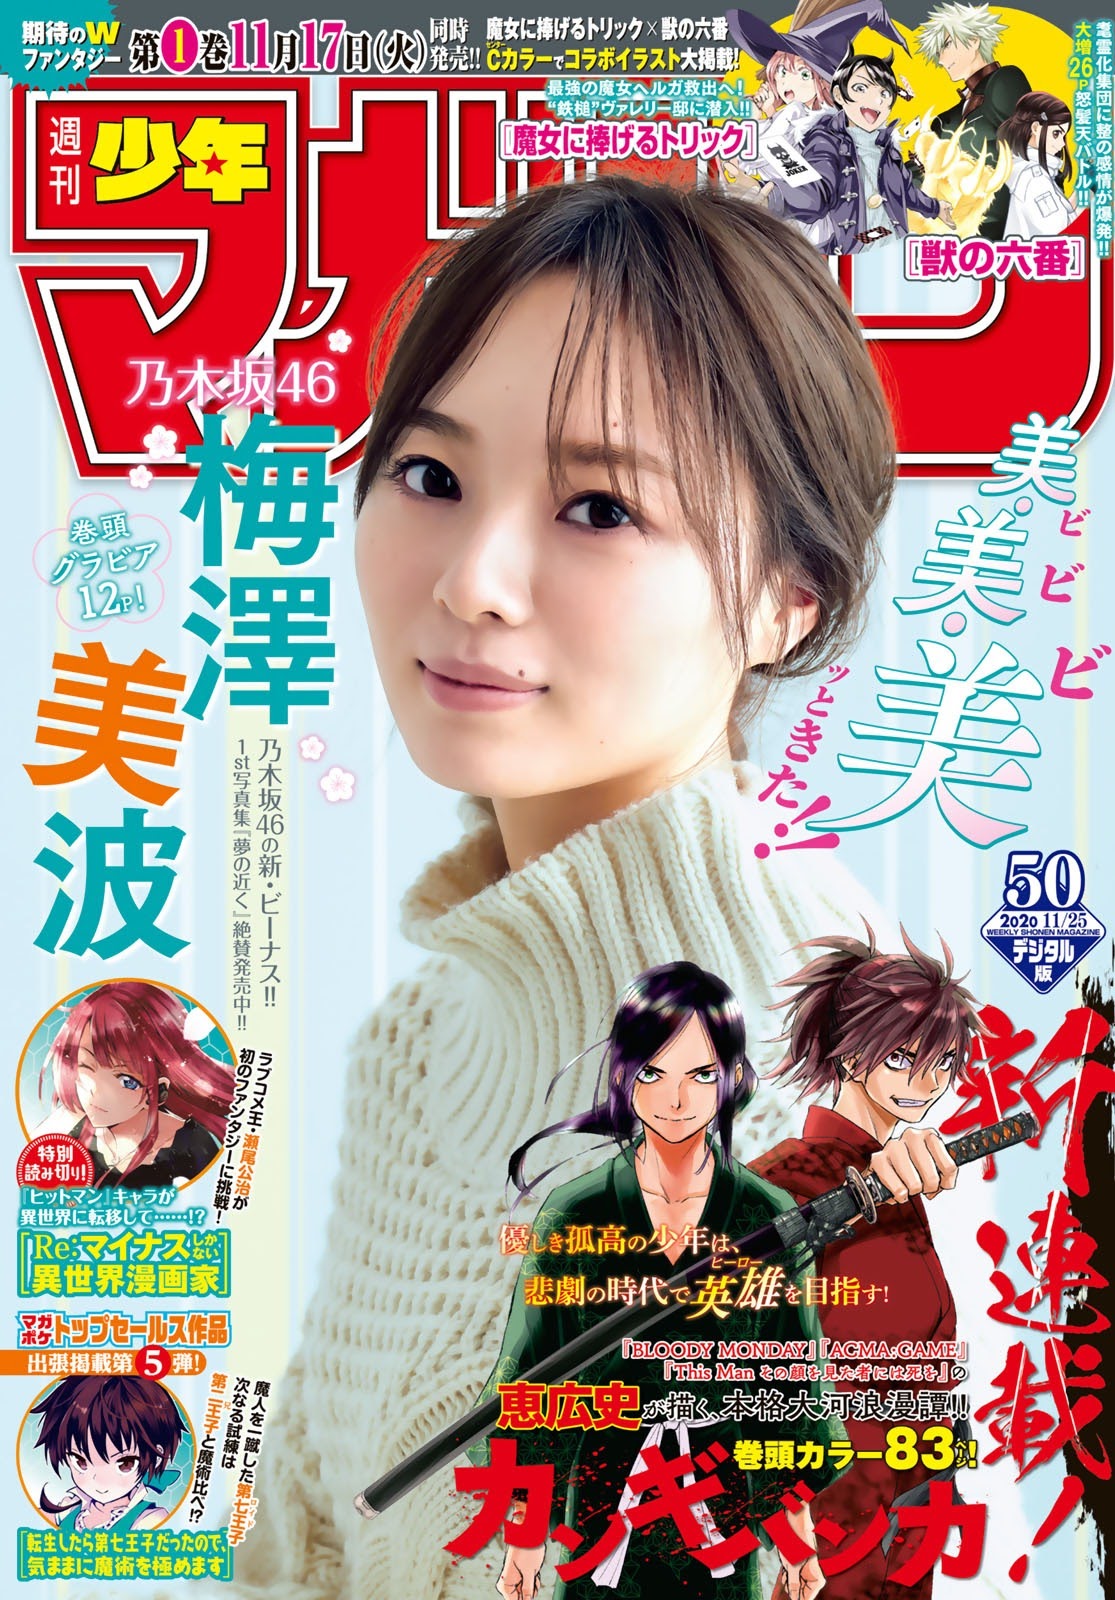 Minami Umezawa 梅澤美波, Shonen Magazine 2020 No.50 (少年マガジン 2020年50号)